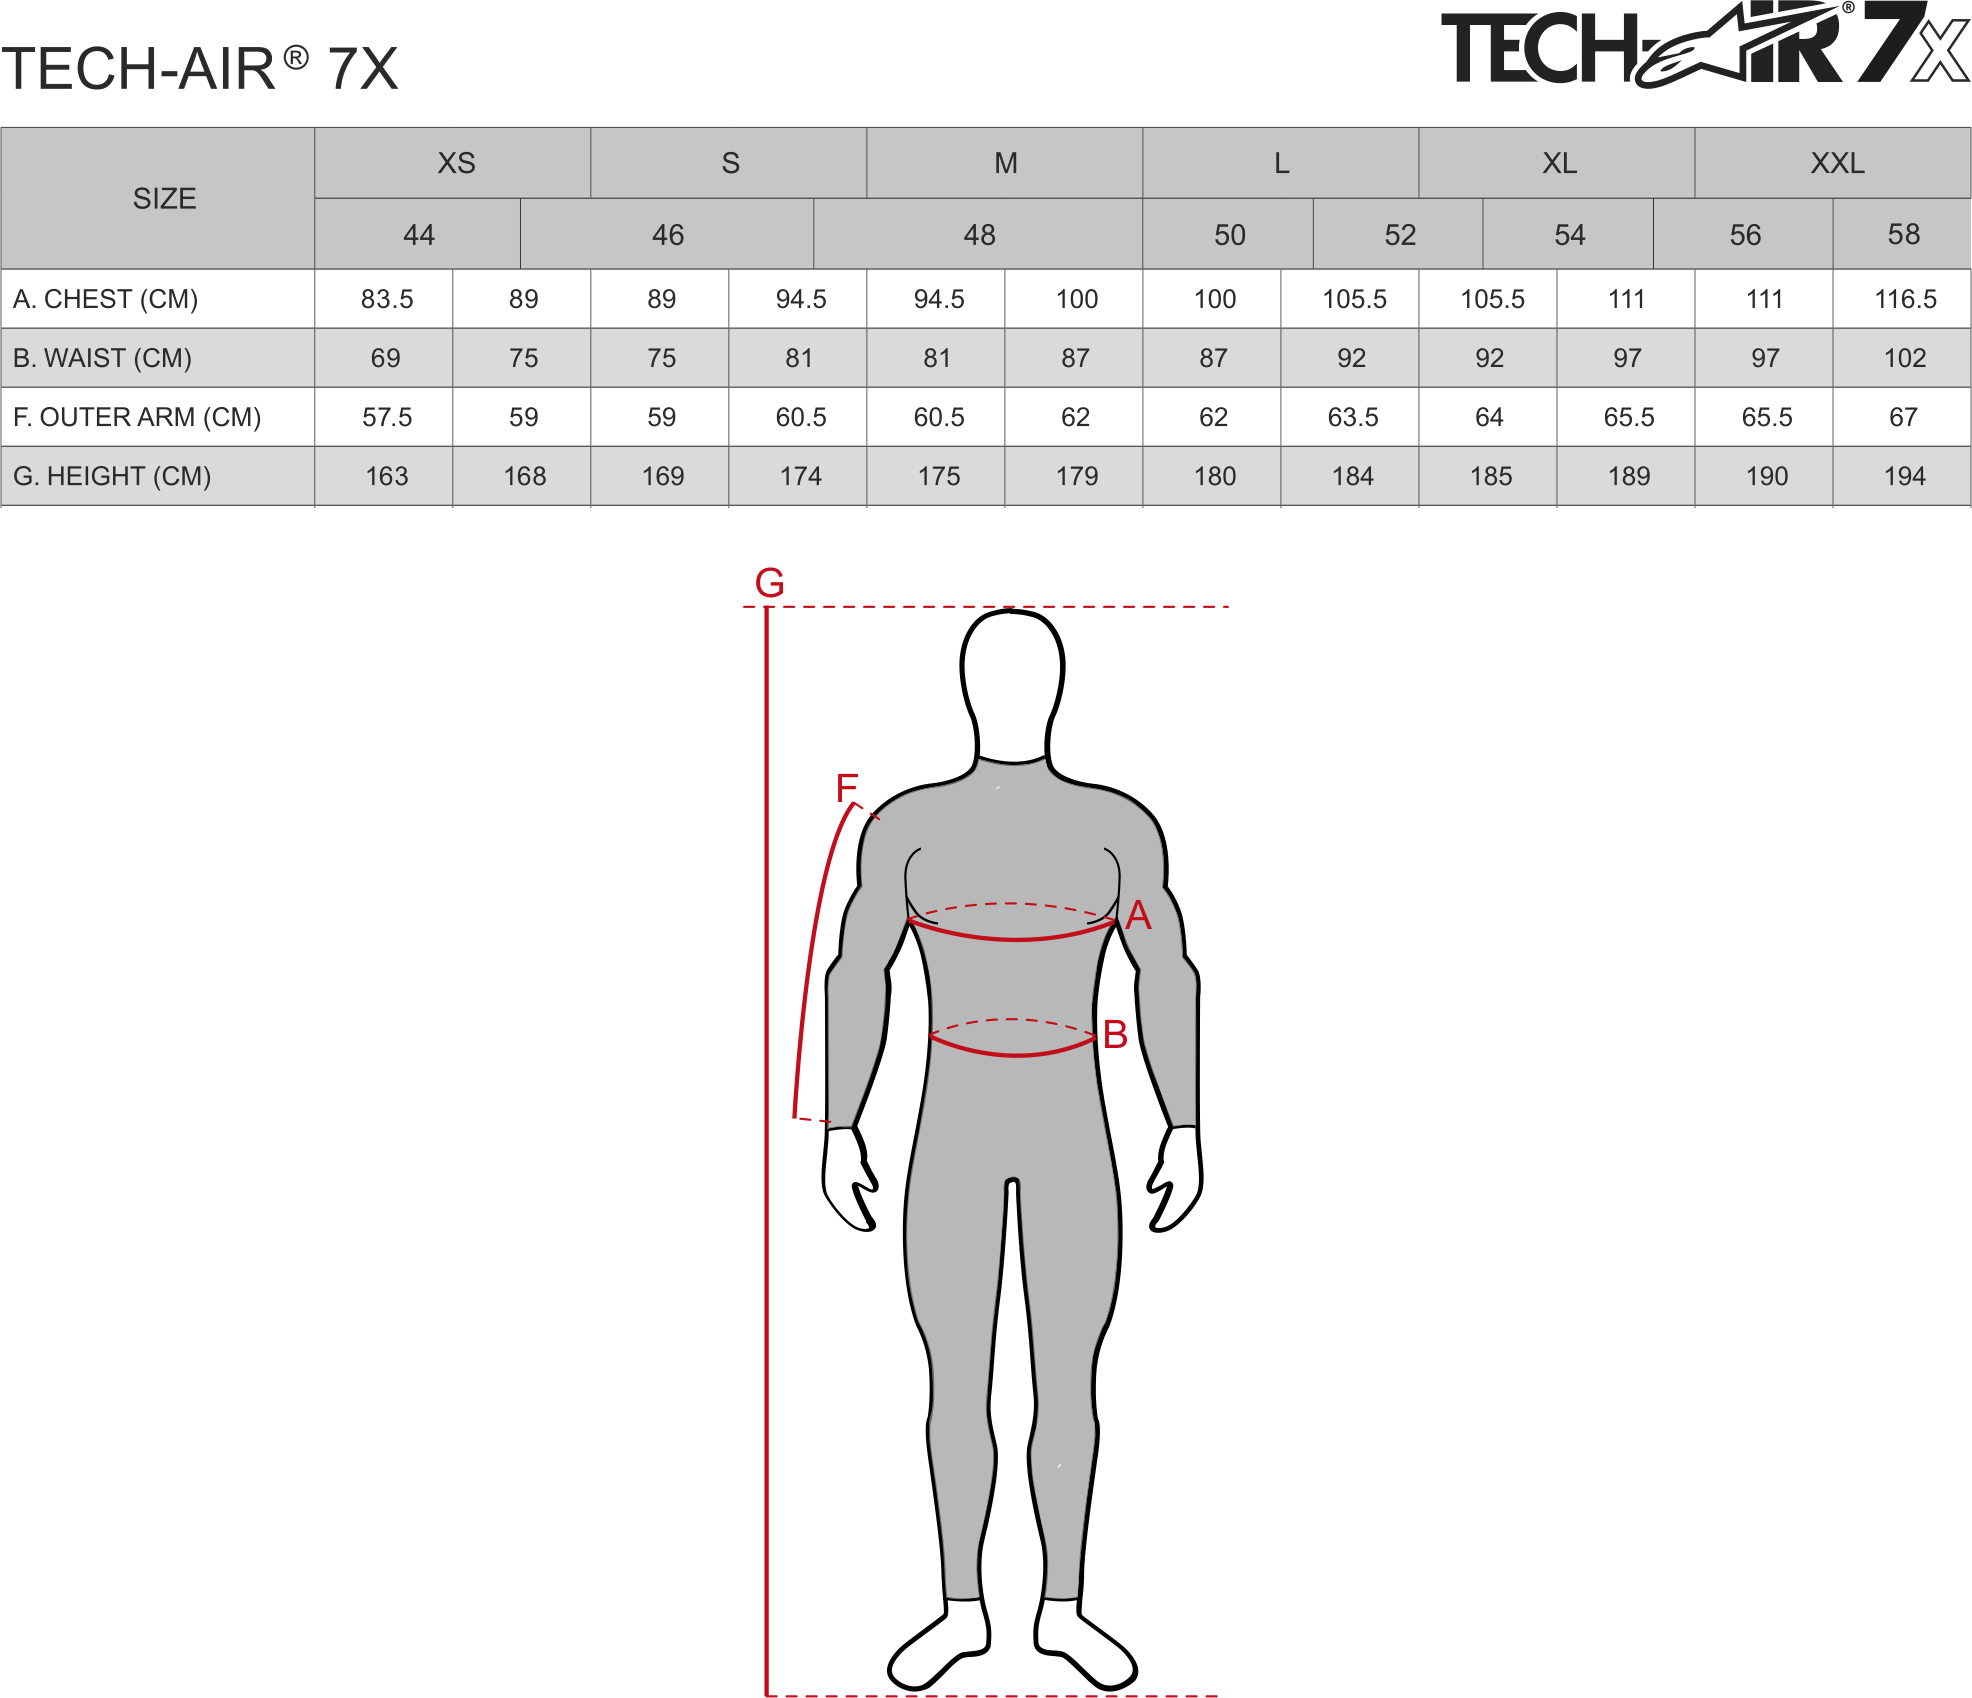 Tech-air_7X velikostní tabulka.png - PSí Hubík 